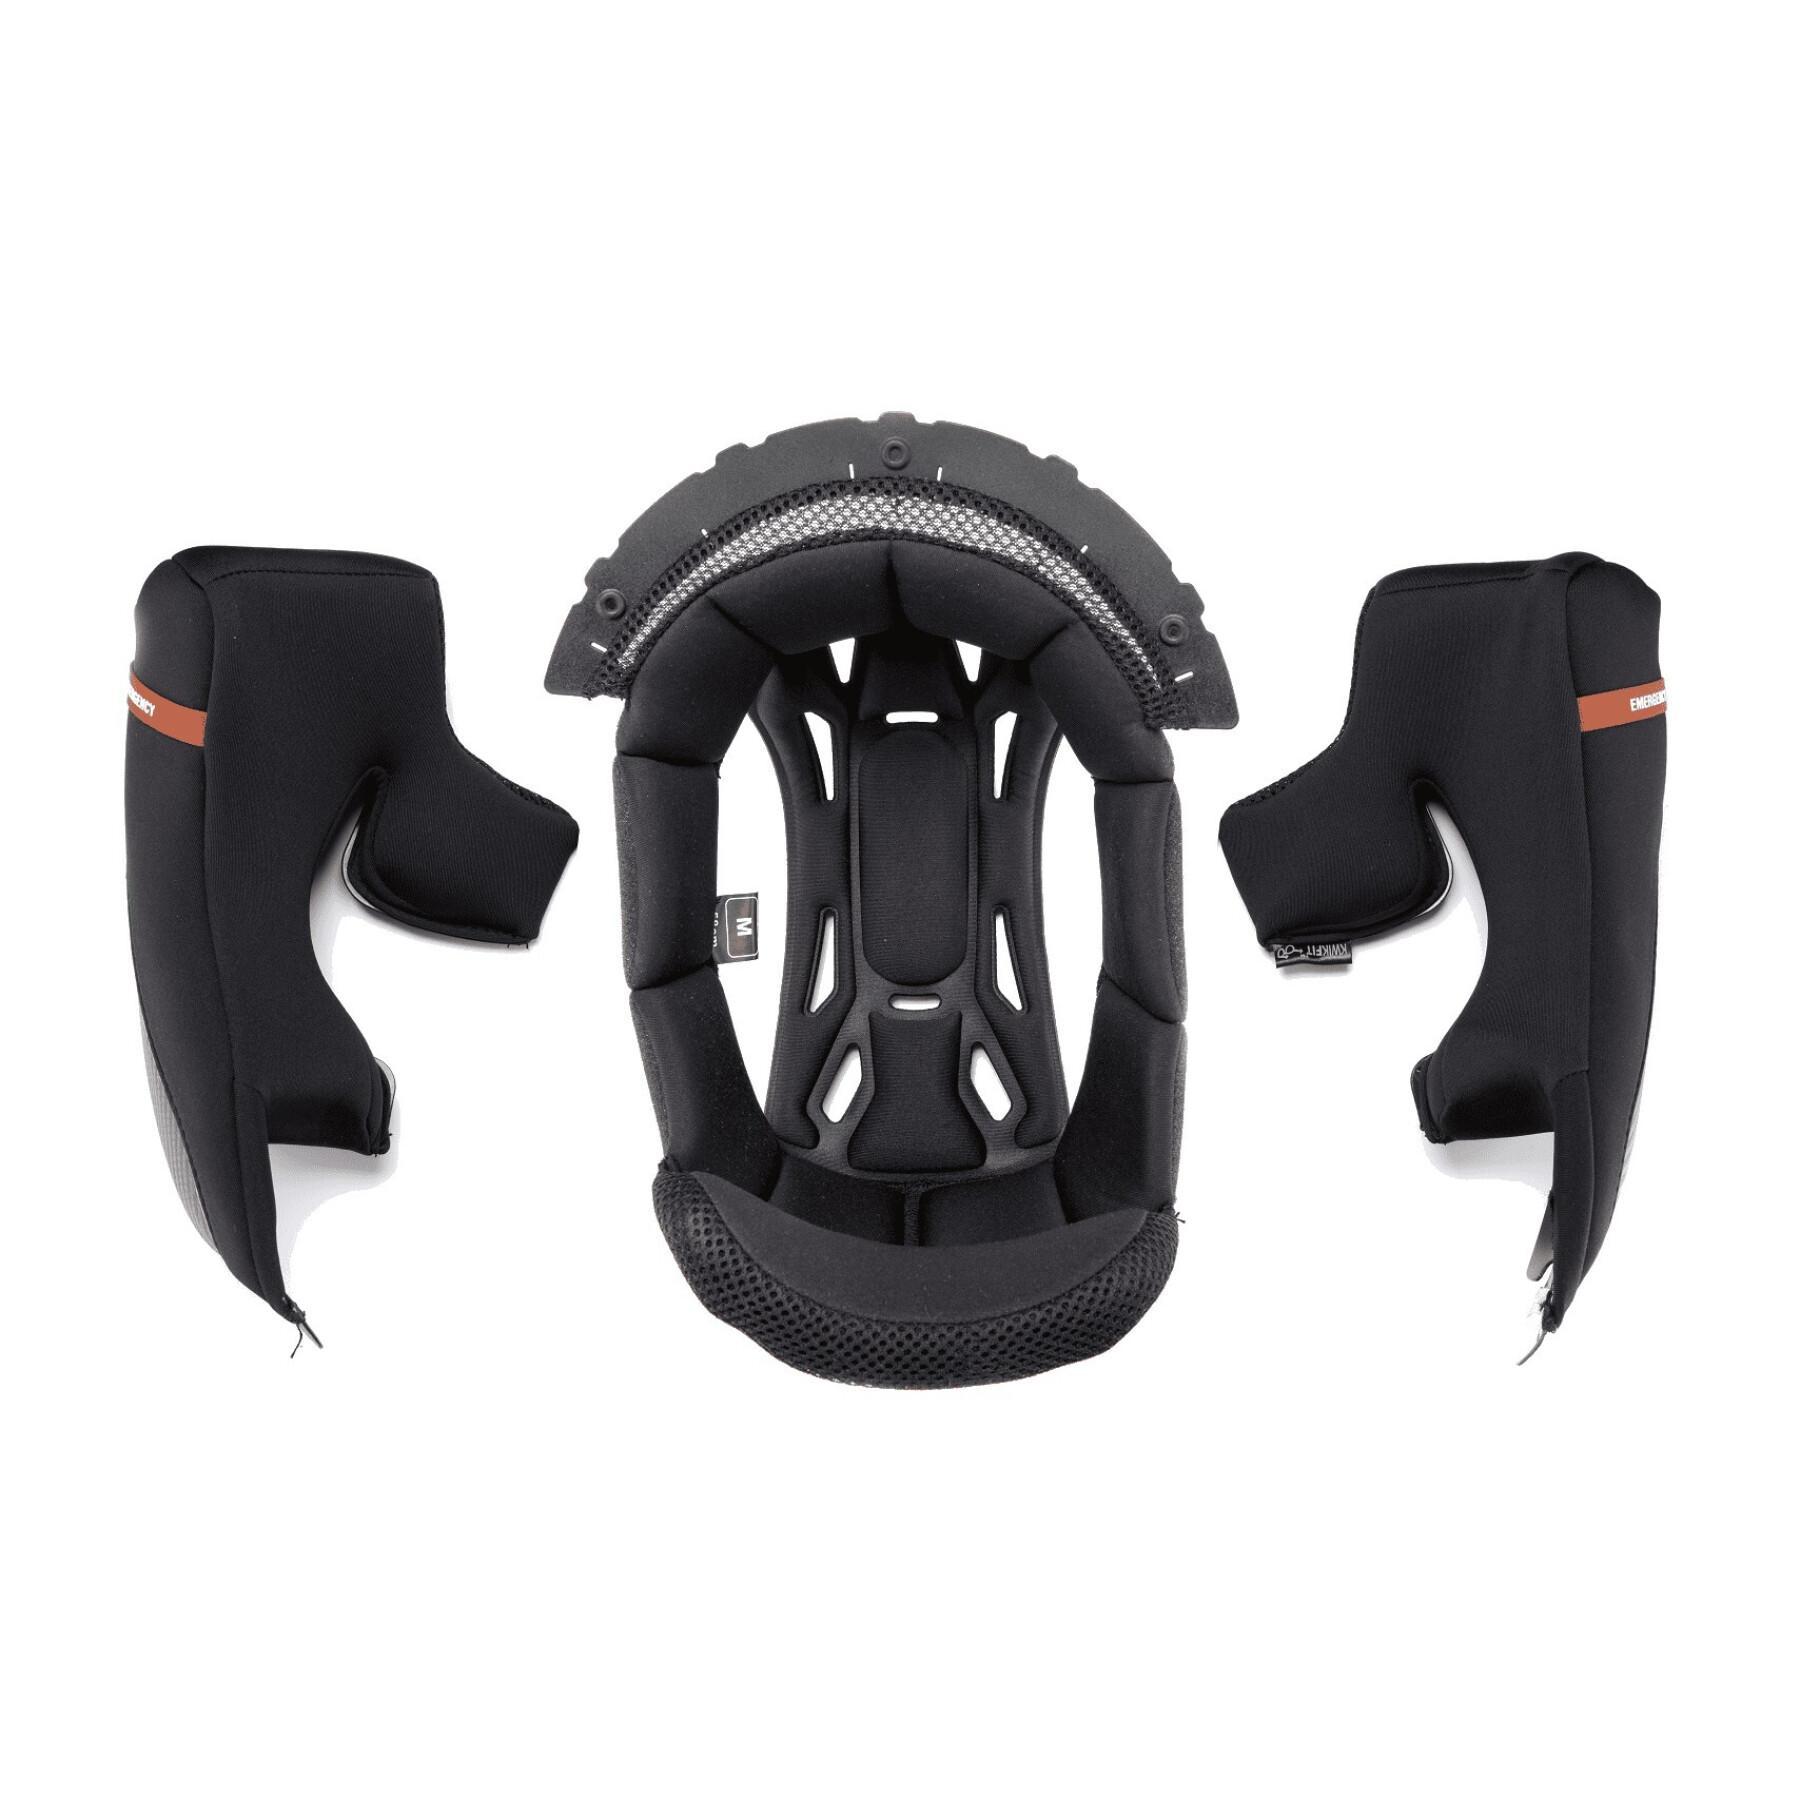 Standard motorcycle helmet foam Scorpion EXO-100 KW